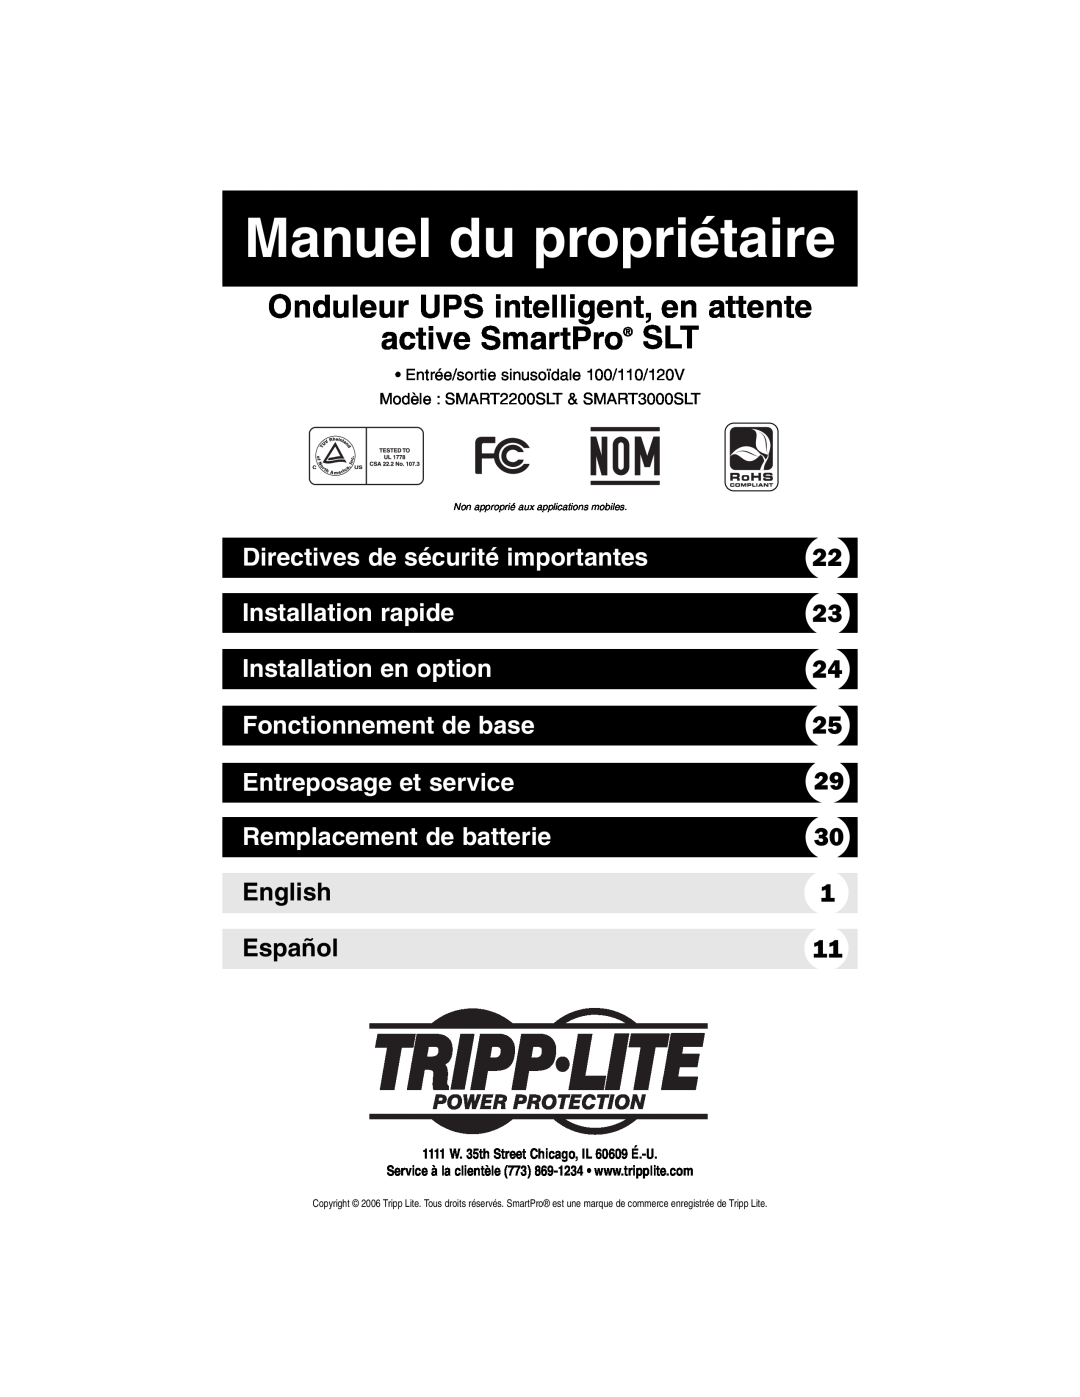 Tripp Lite SMART3000SLT Manuel du propriétaire, Directives de sécurité importantes, Installation rapide, English, Español 